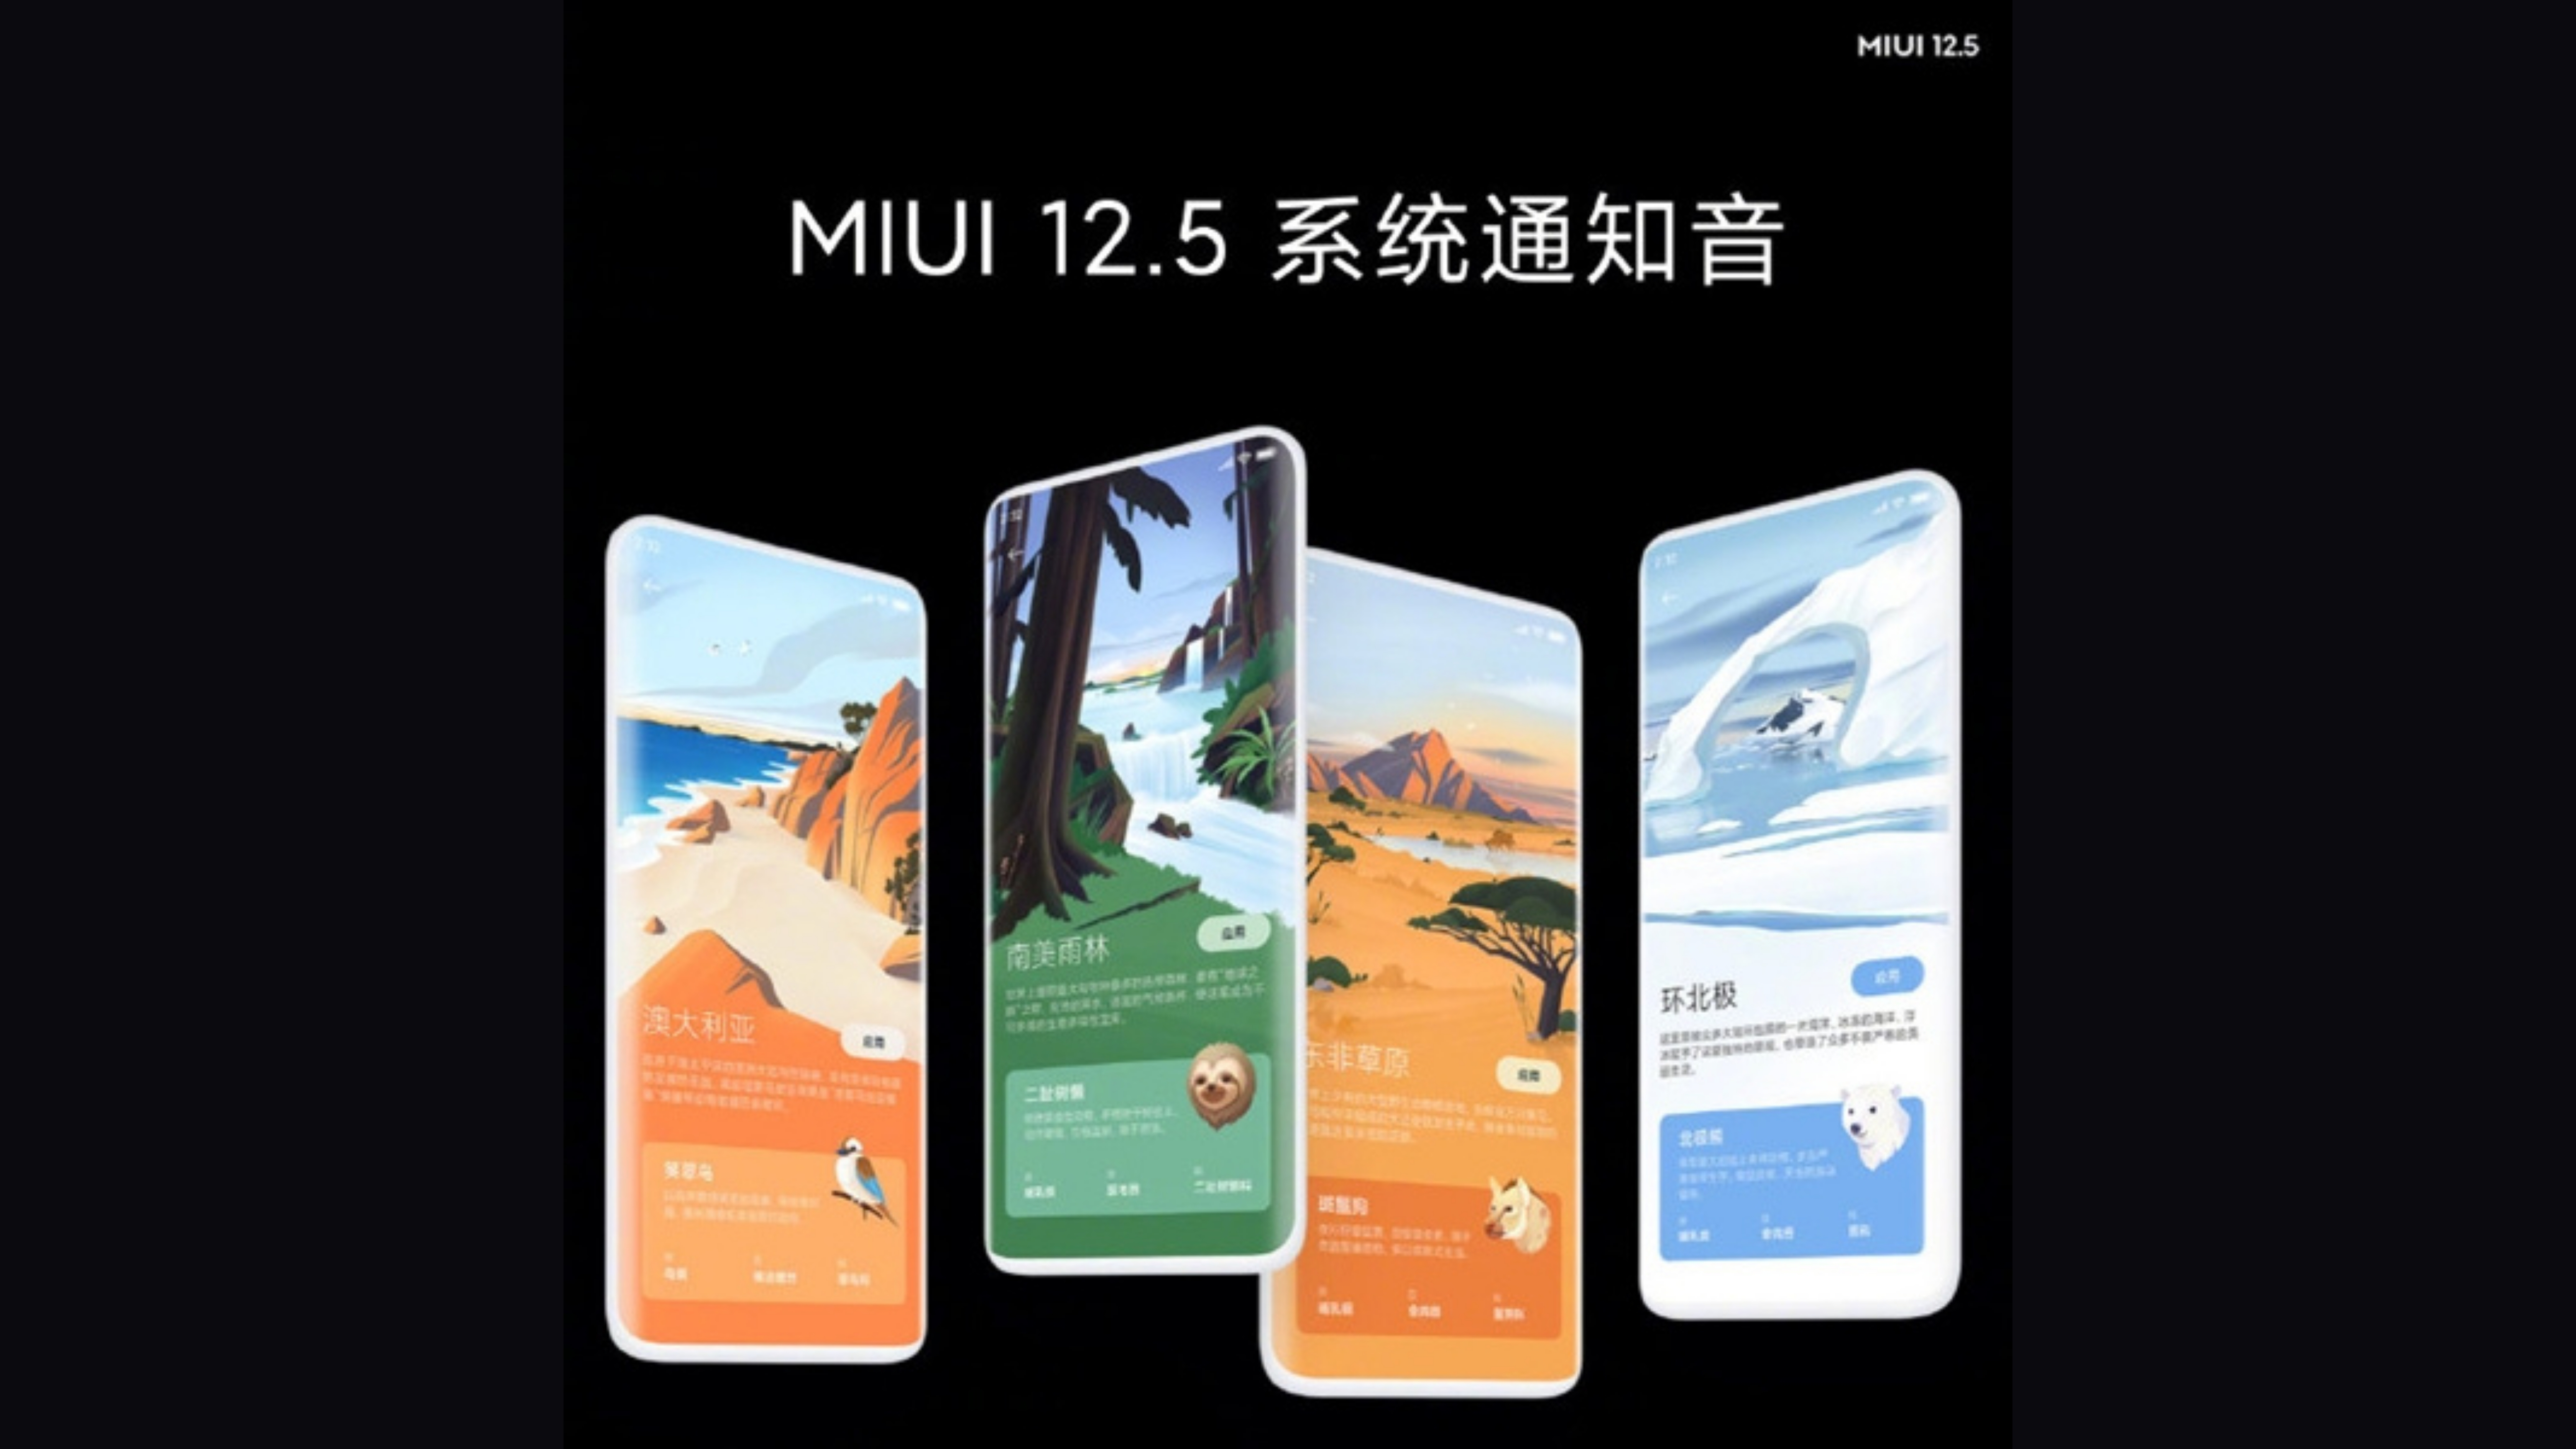 Miui 12.5 5. MIUI 12.5. Обои Xiaomi MIUI 12.5. MIUI 12.5 enhanced Edition. Интерфейс MIUI 12.5.